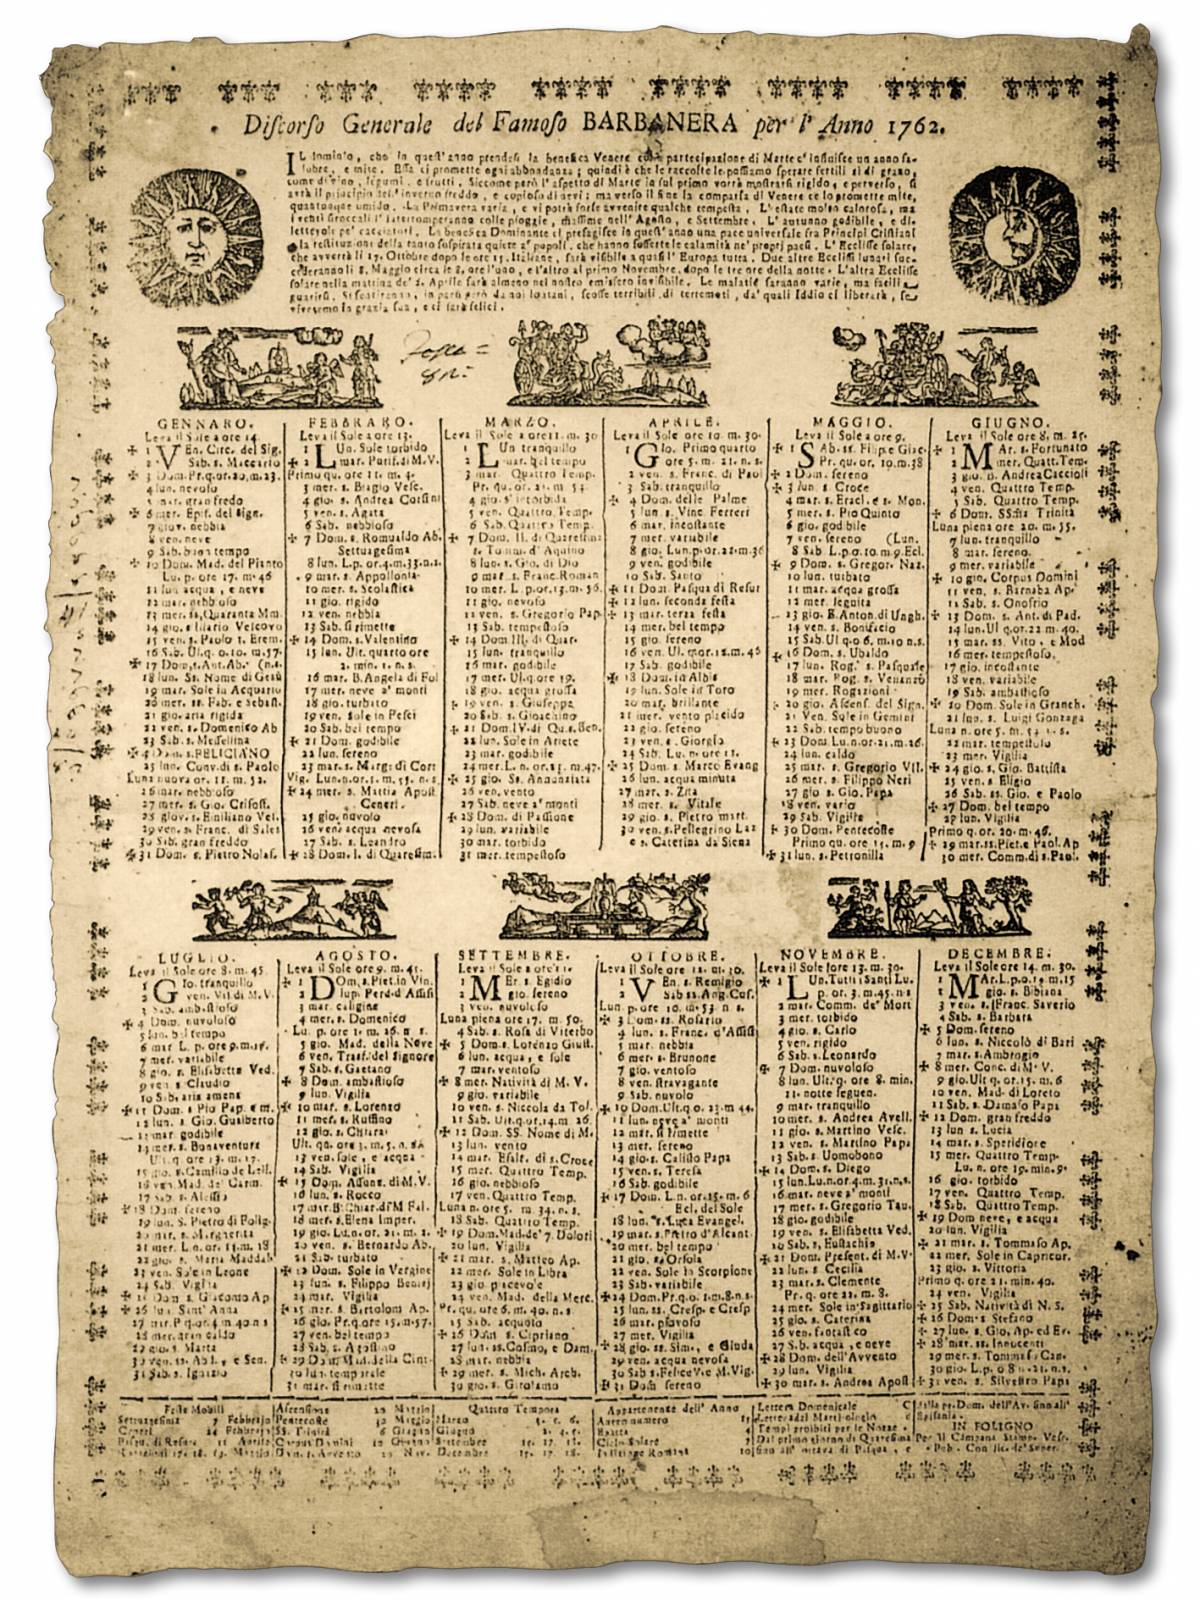 L’almanacco di Barbanera compie 250 anni